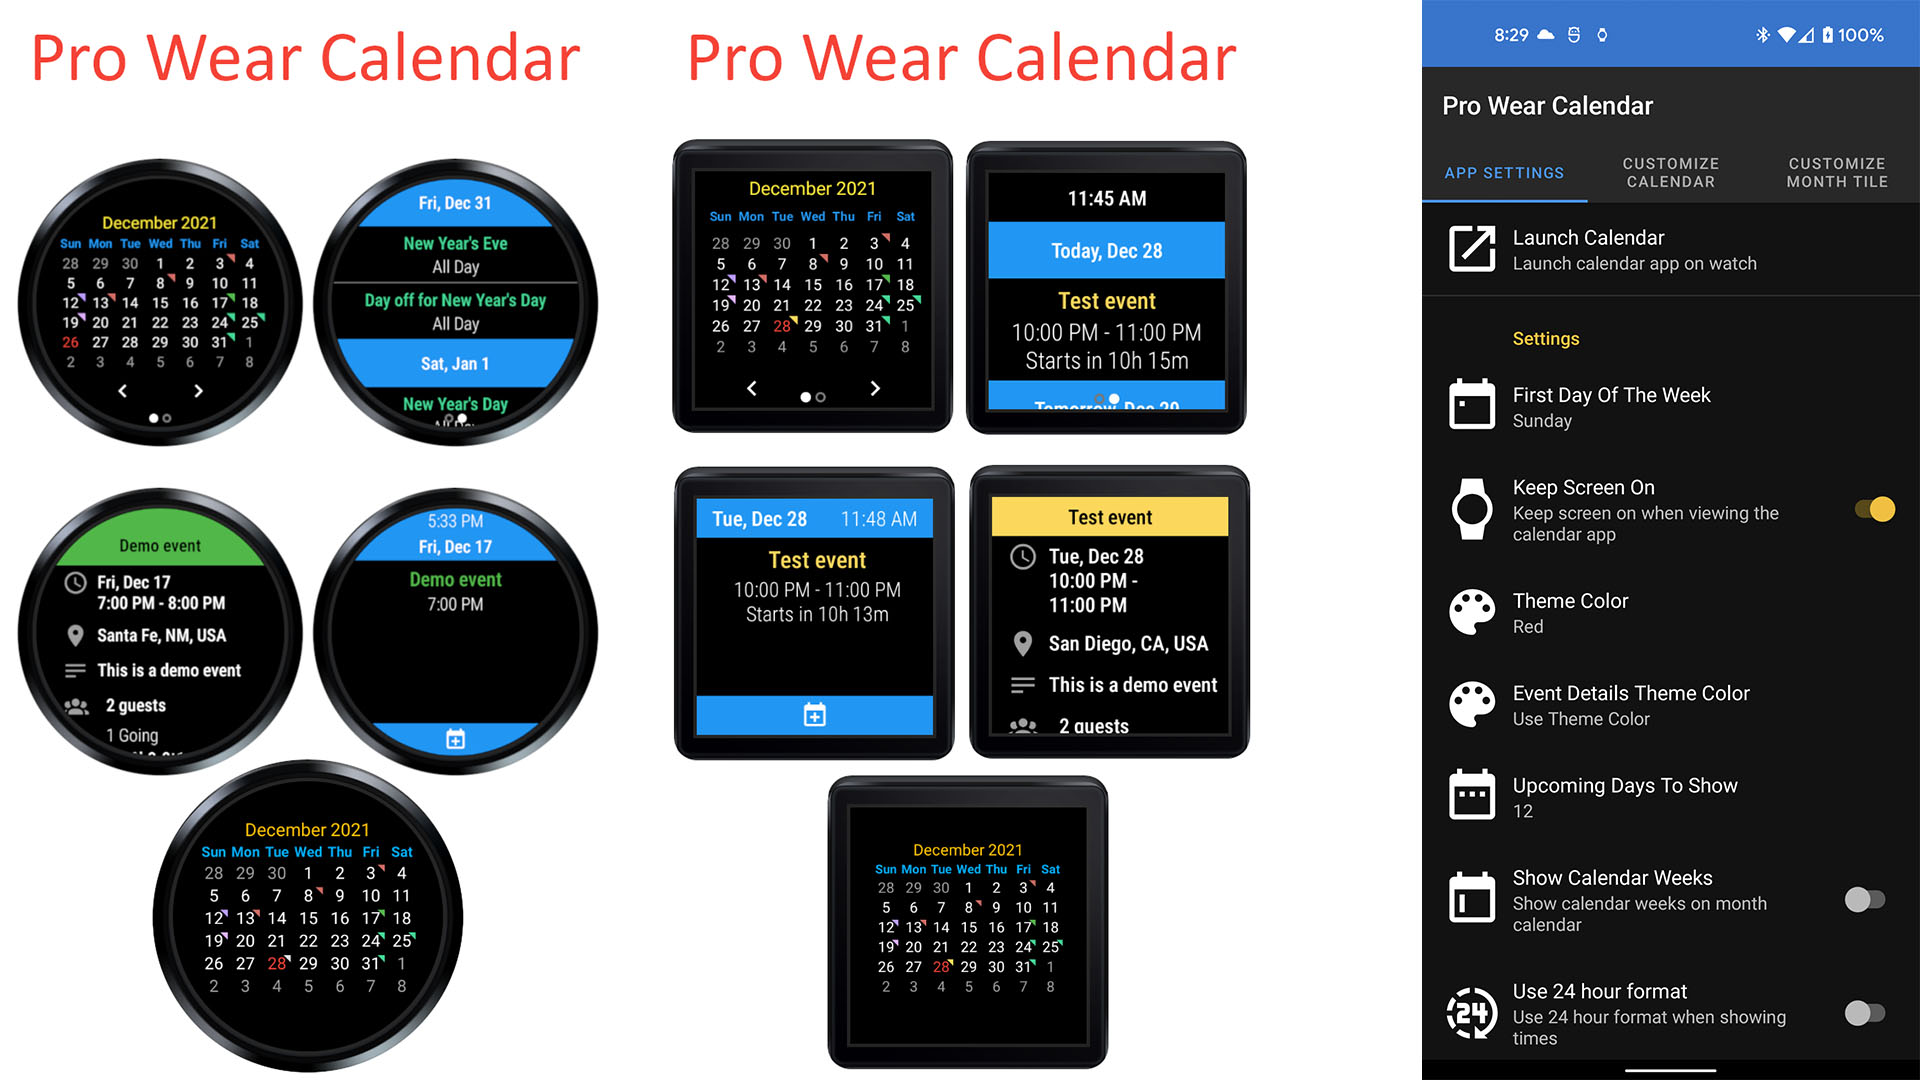 Captura de tela do Calendário Pro Wear 2022